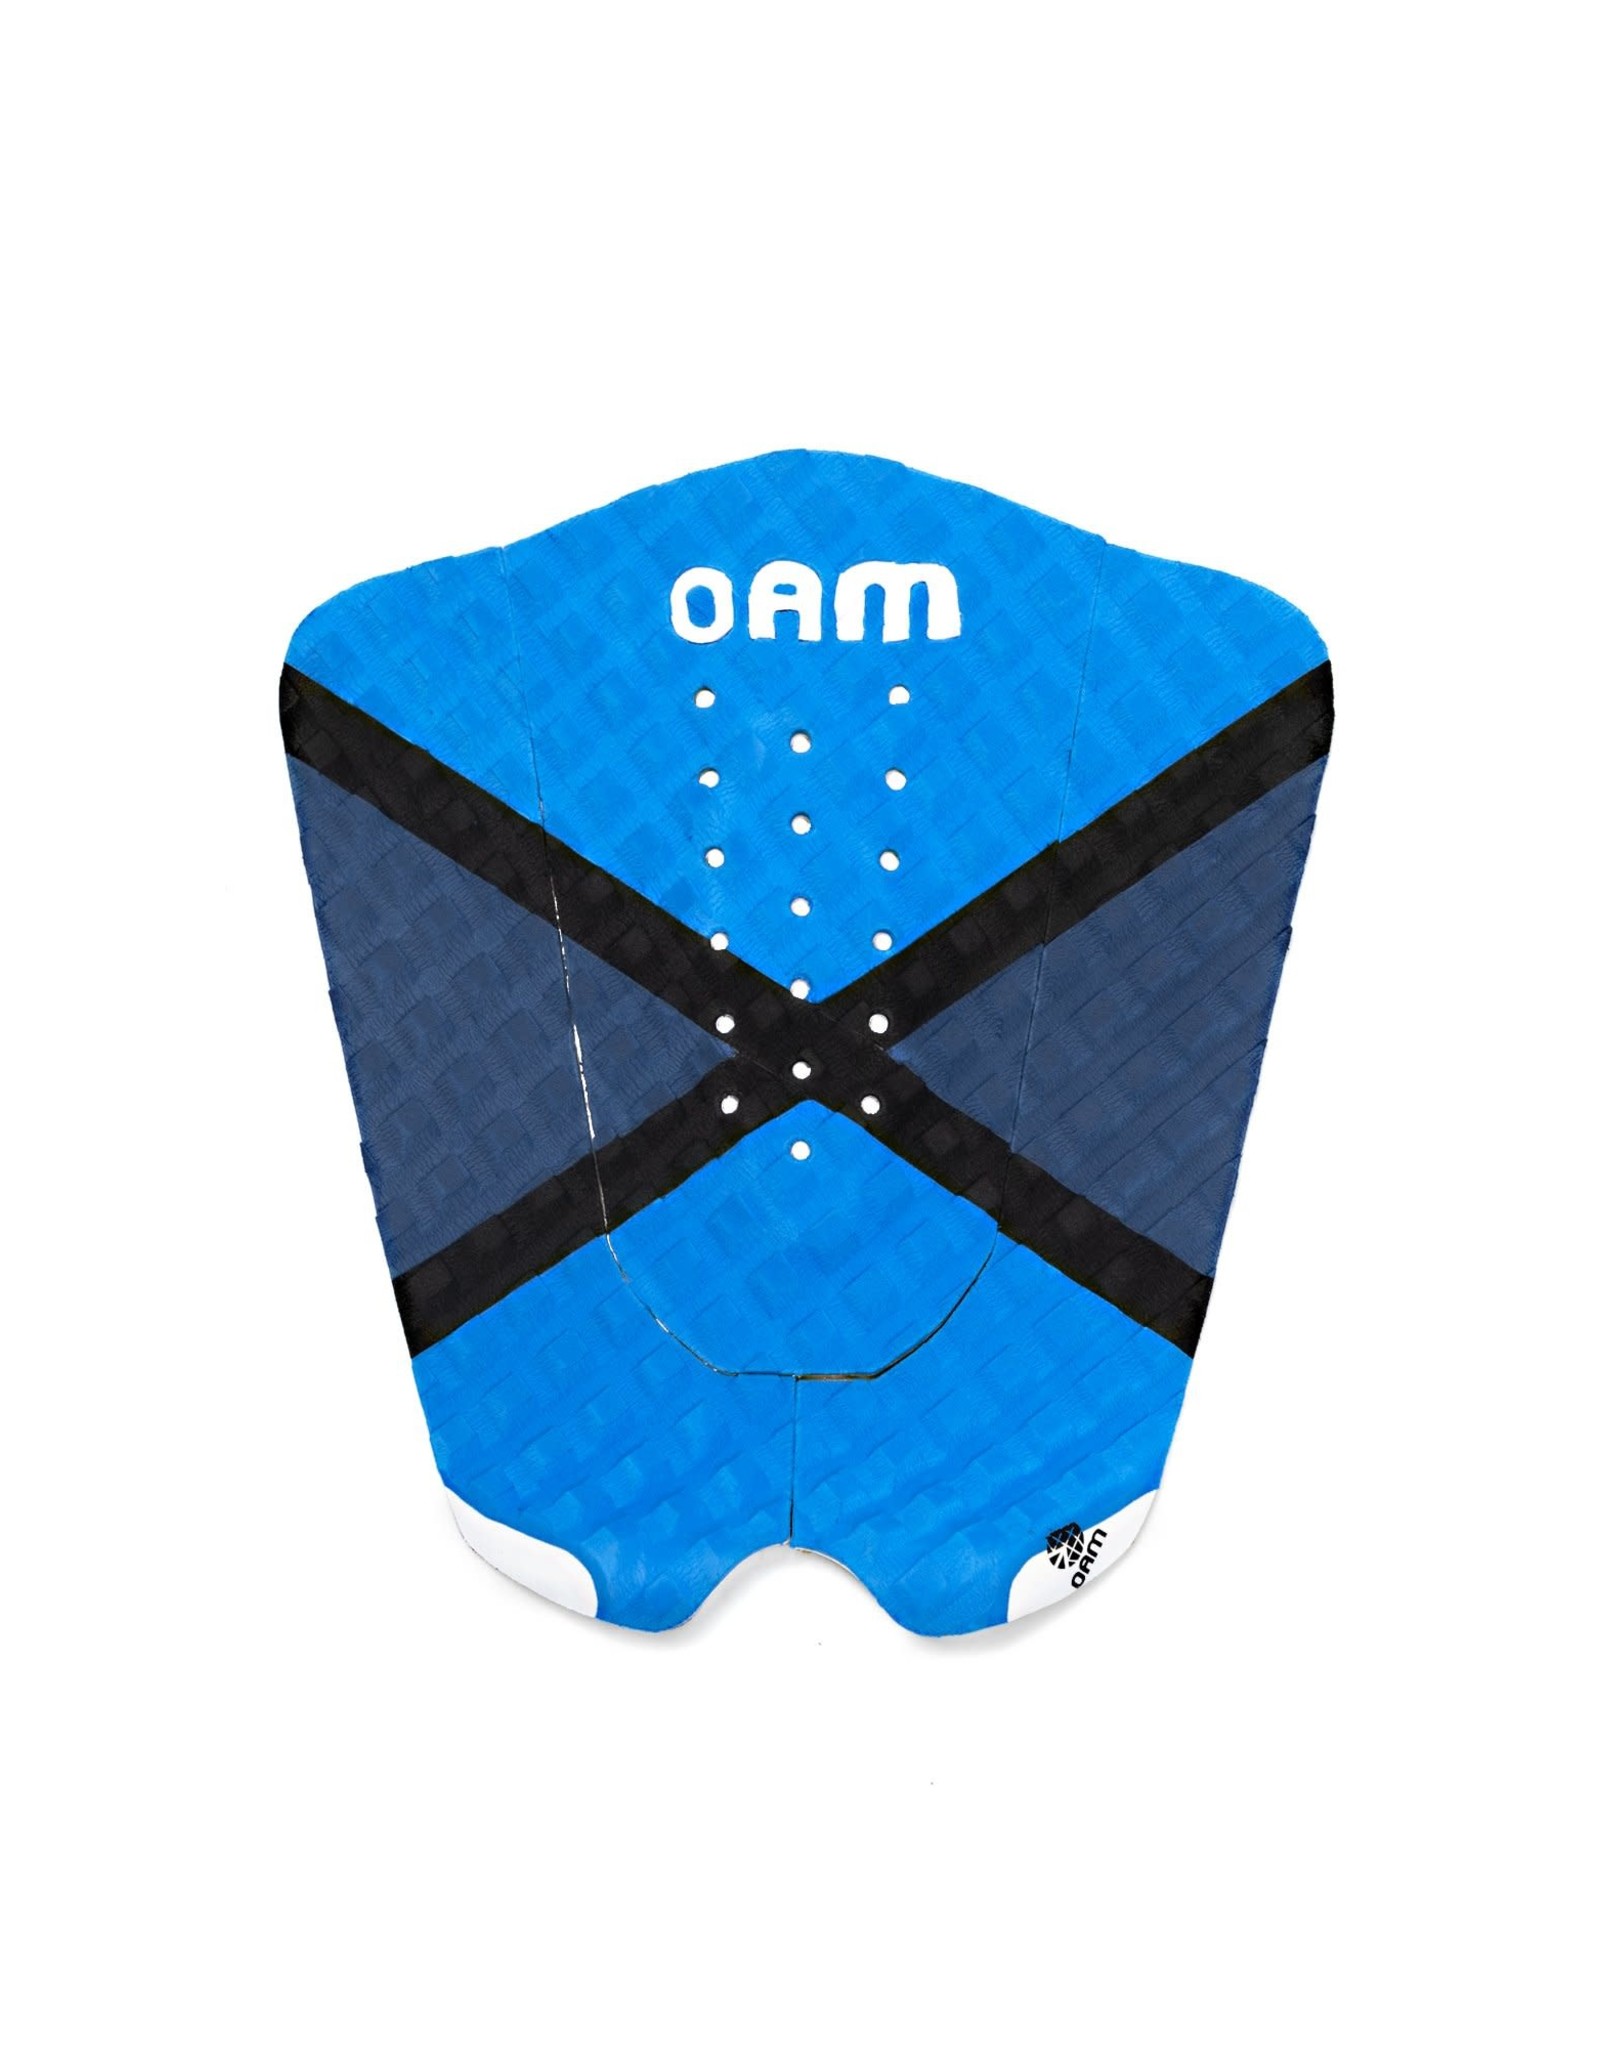 OAM OAM Surfboard Traction Pad - Alex Gray Blue